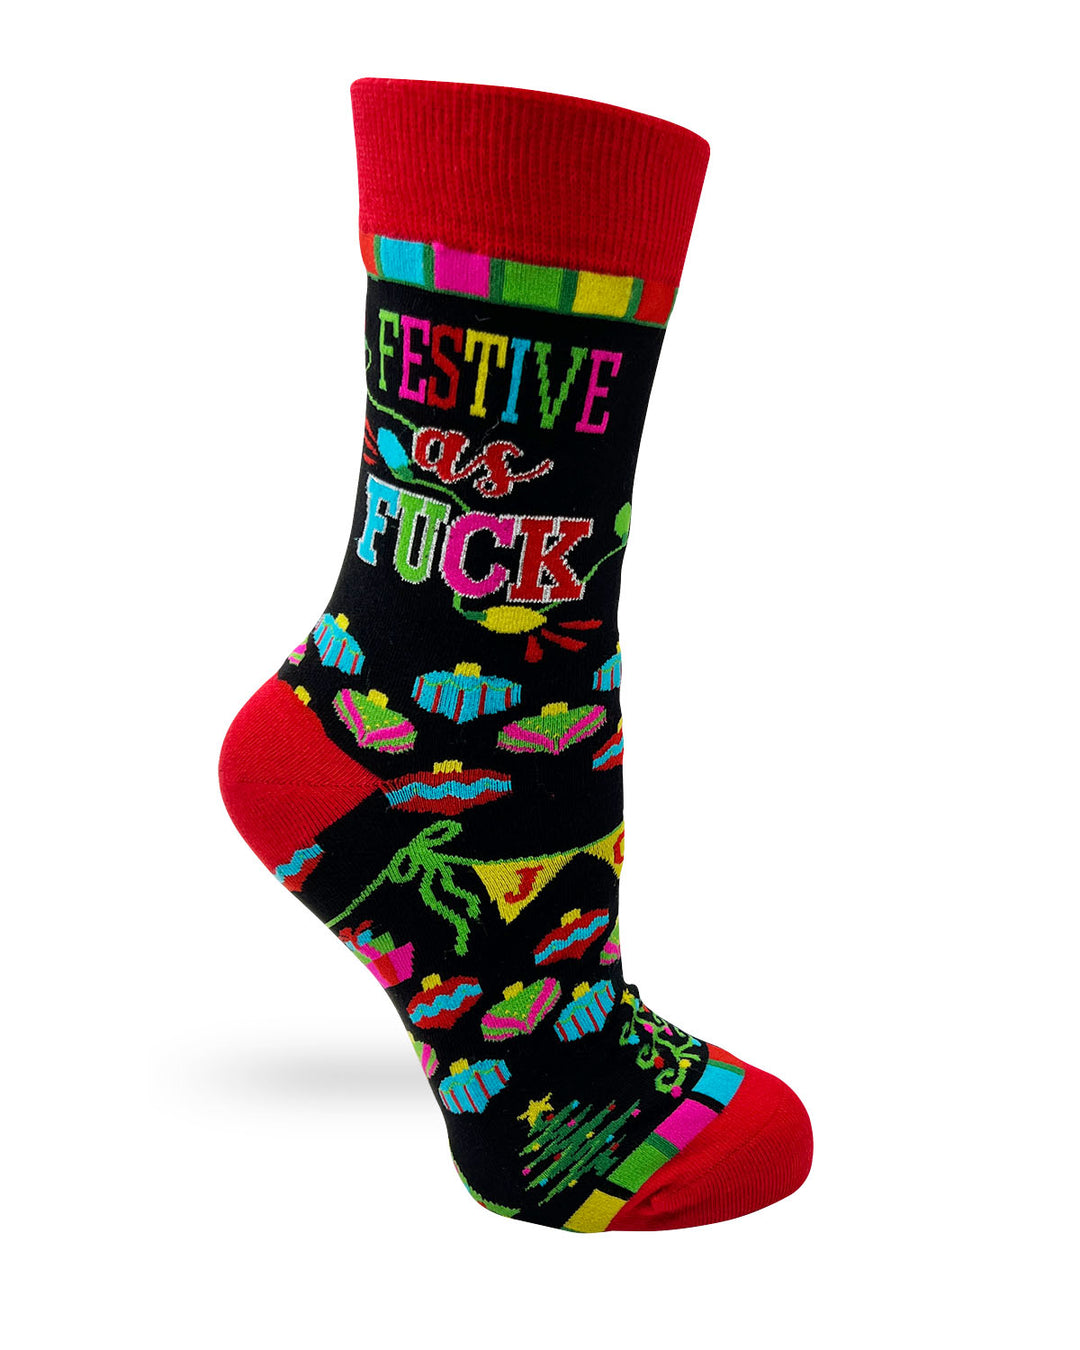 Festive as Fuck Sassy Women's Novelty Socks